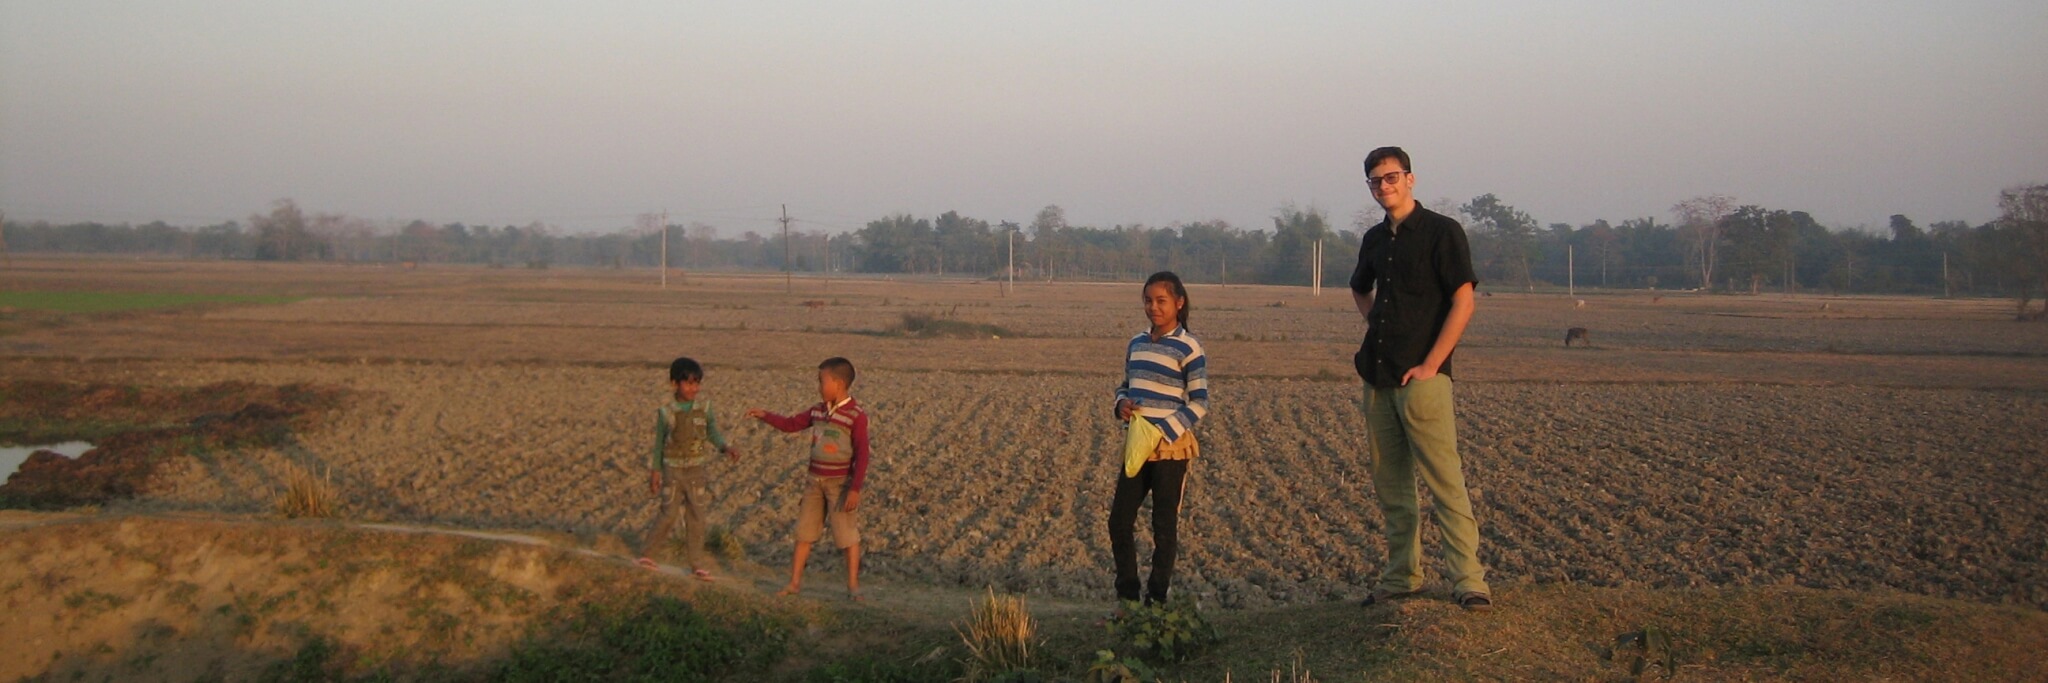 Bild: Kinder stehen mit einem Freiwilligen auf einem Feld